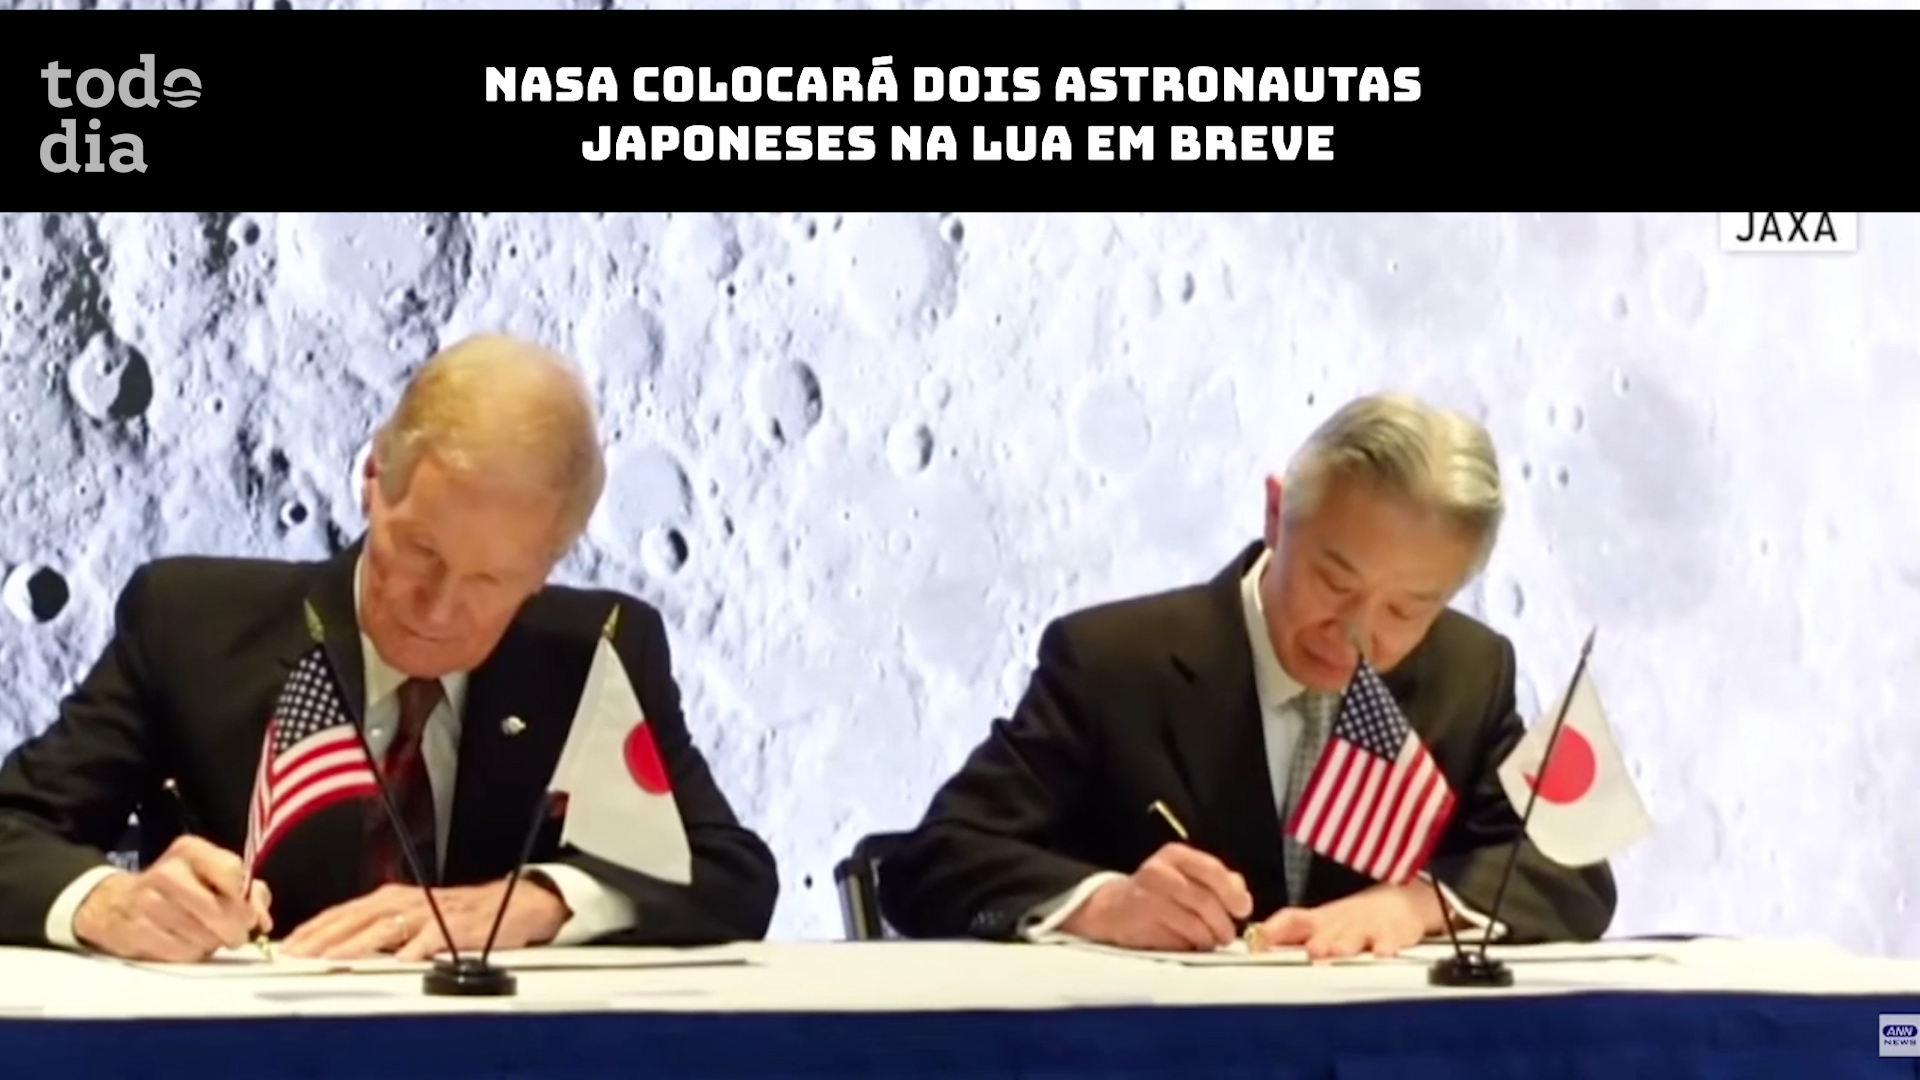 Nasa colocará dois astronautas japoneses na lua em breve 